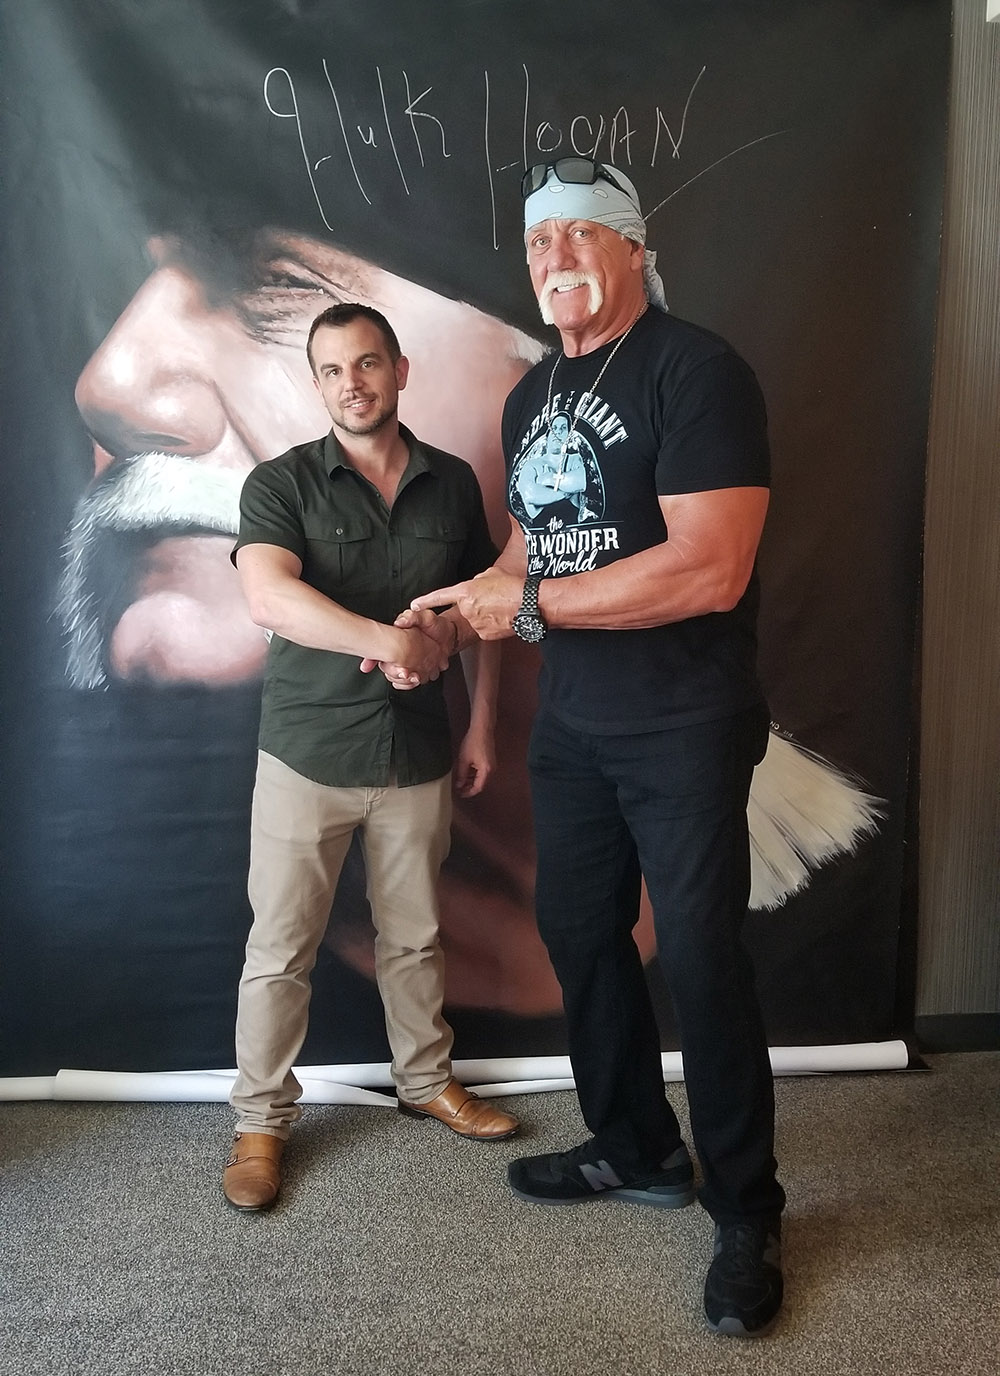 10 foot tall Hulk Hogan painting signed by Hulk - Patrick Ganino